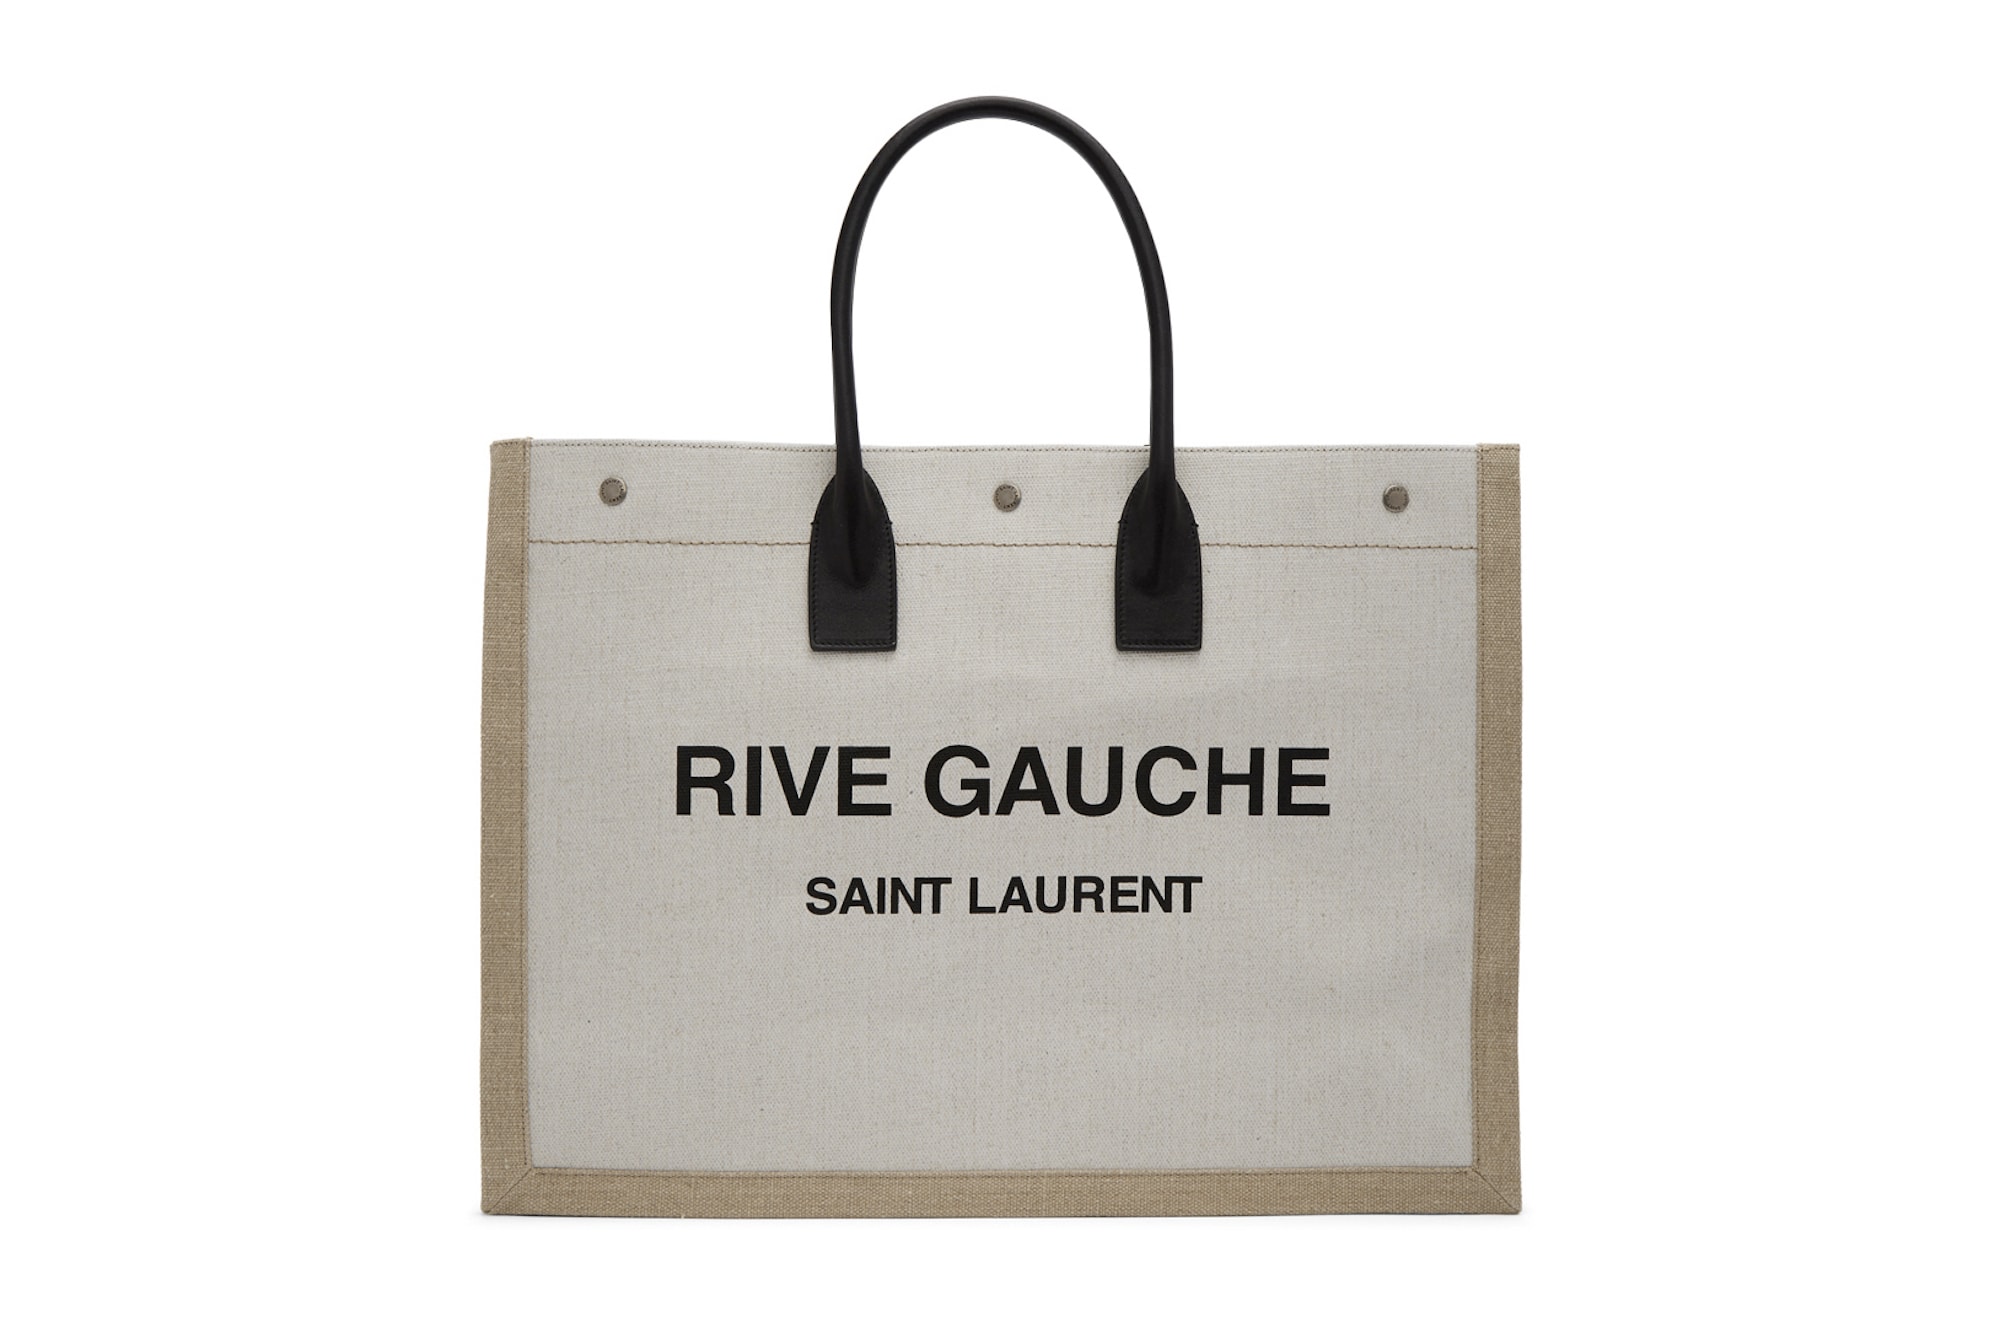 Saint Laurent Logo Canvas Tote Bag Black Beige White Print YSL Big Bag Designer